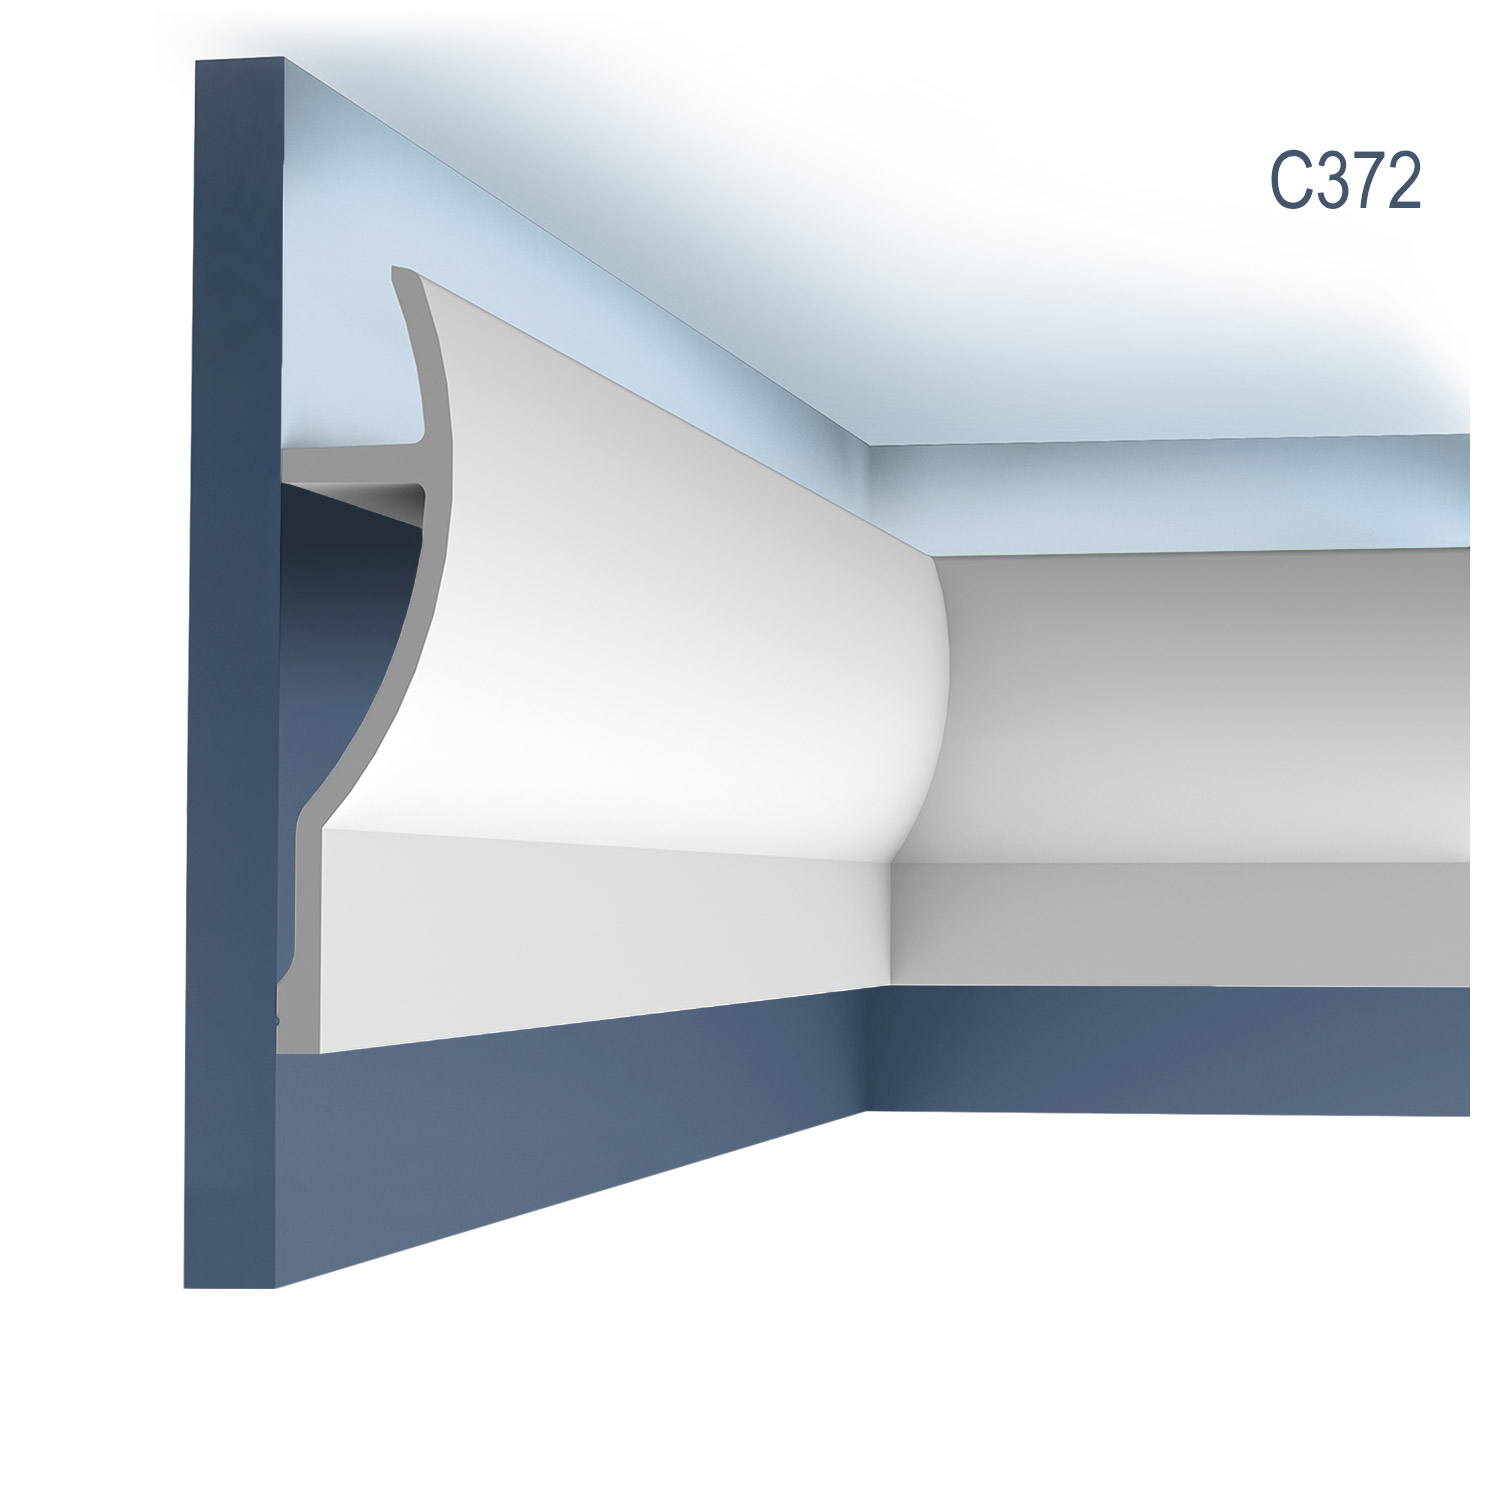 Cornisa / Scafa C372, profil decorativ, pentru tavan, alba, vopsibila, rigida, calitate excelenta, Belgia, din Poliuretan rigid, L 200 x H 28 x W 7 cm